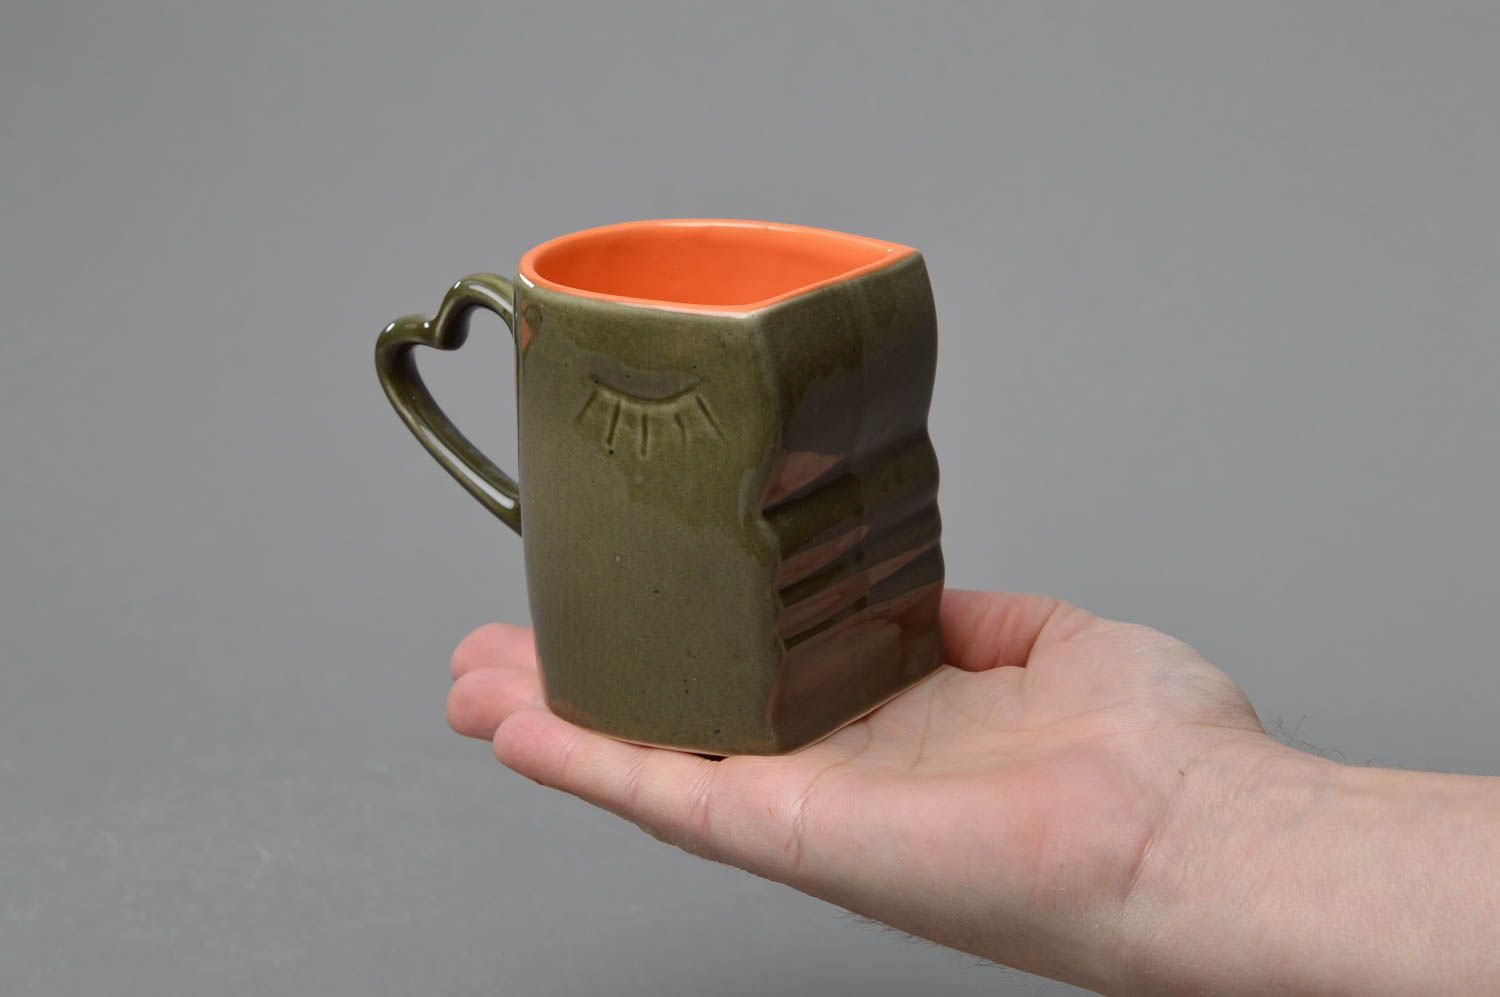 Зеленая с оранжевым чашка из фарфора ручной работы расписанная глазурью фото 4